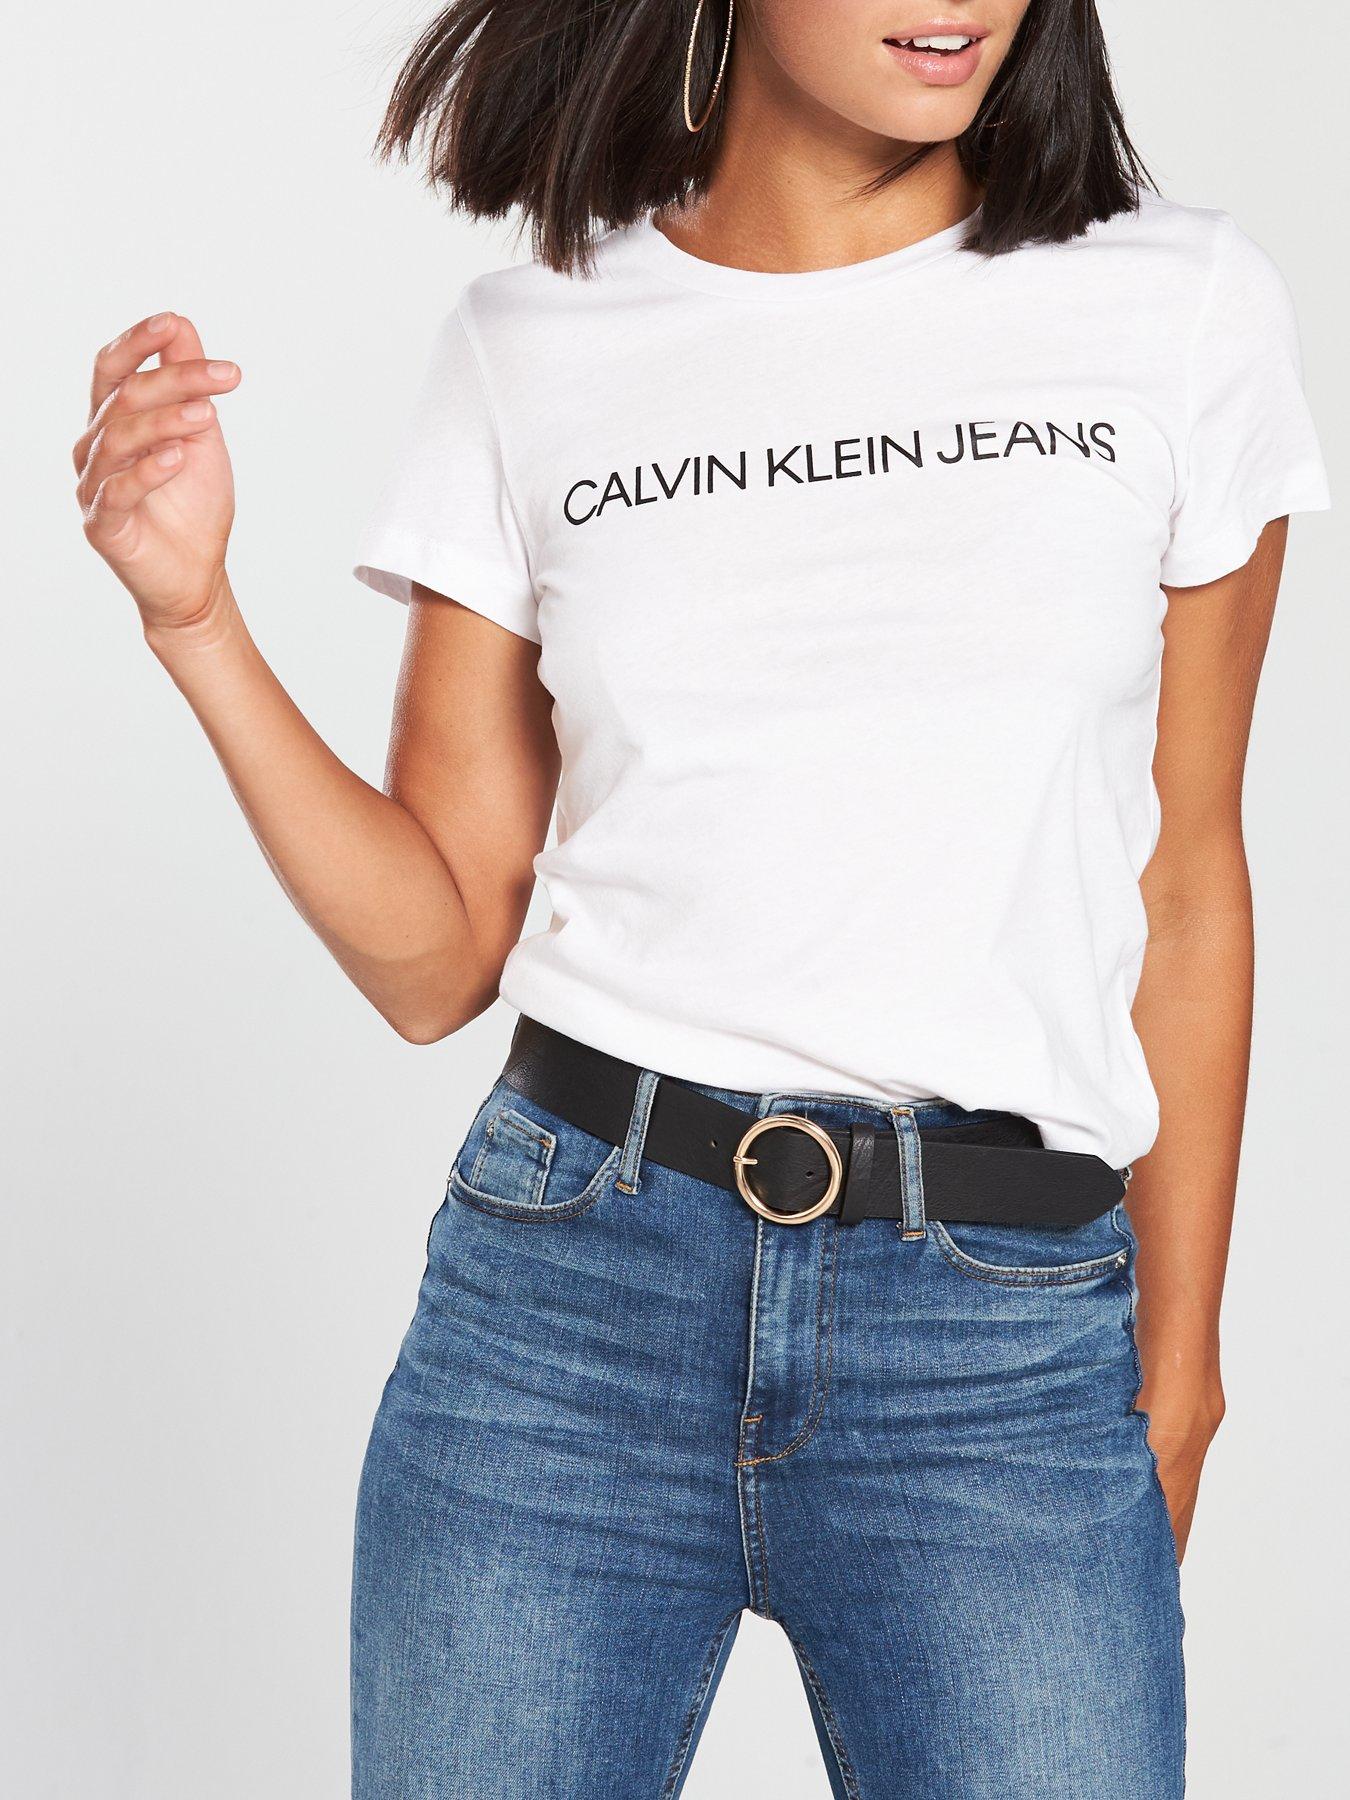 calvin klein jeans t shirt womens